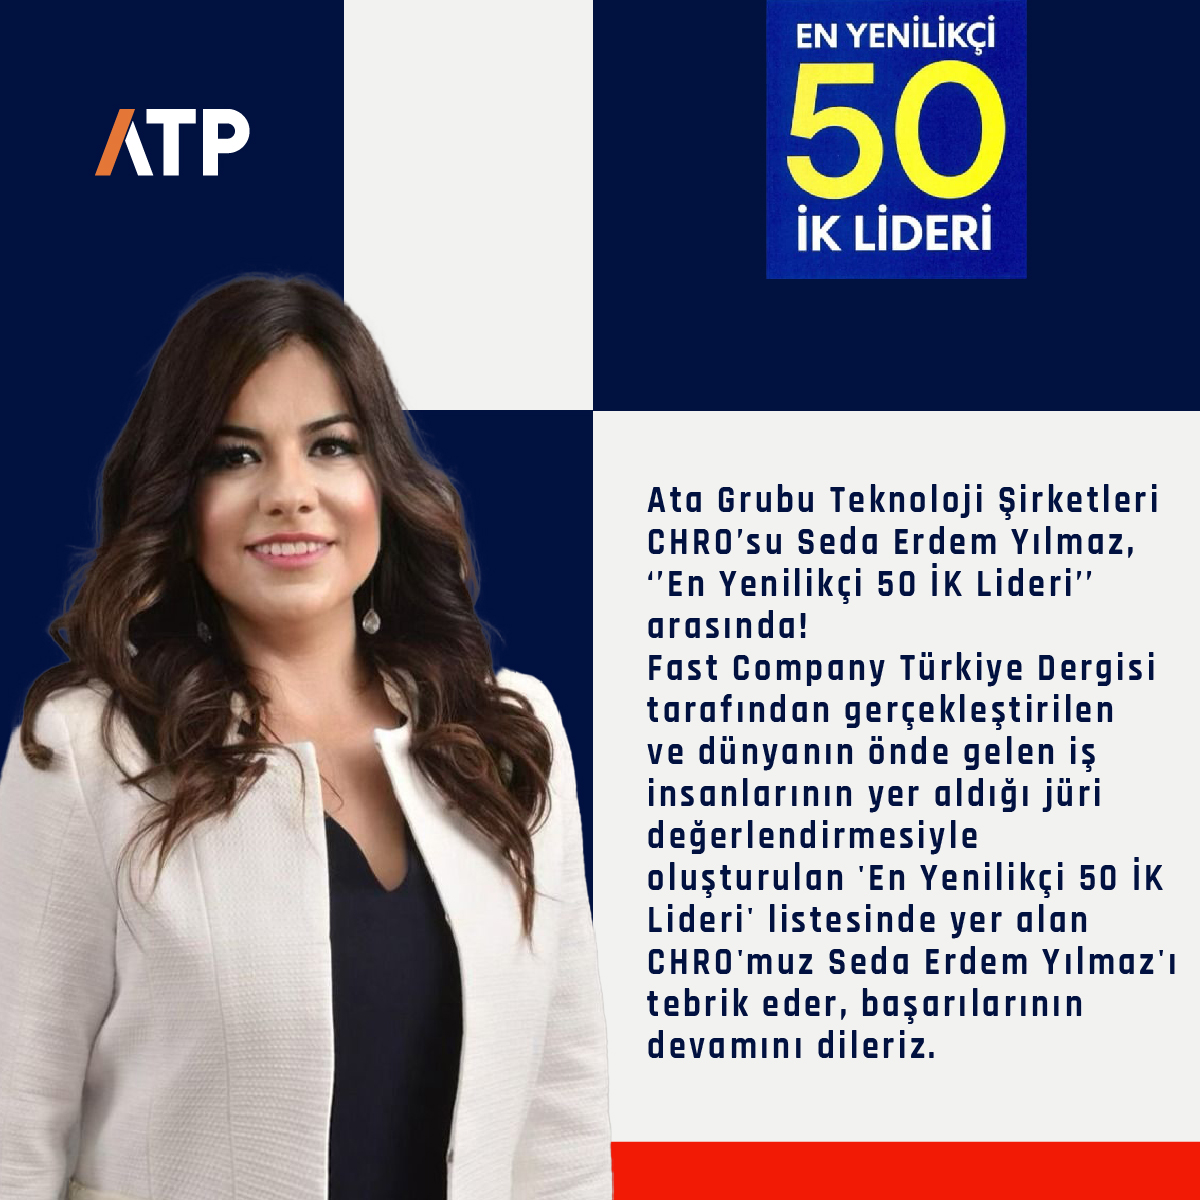 Ata Grubu Teknoloji Şirketleri CHRO'su Seda Erdem Yılmaz, 'En Yenilikçi 50 İK Lideri' arasında!

#atp #atatp #ik